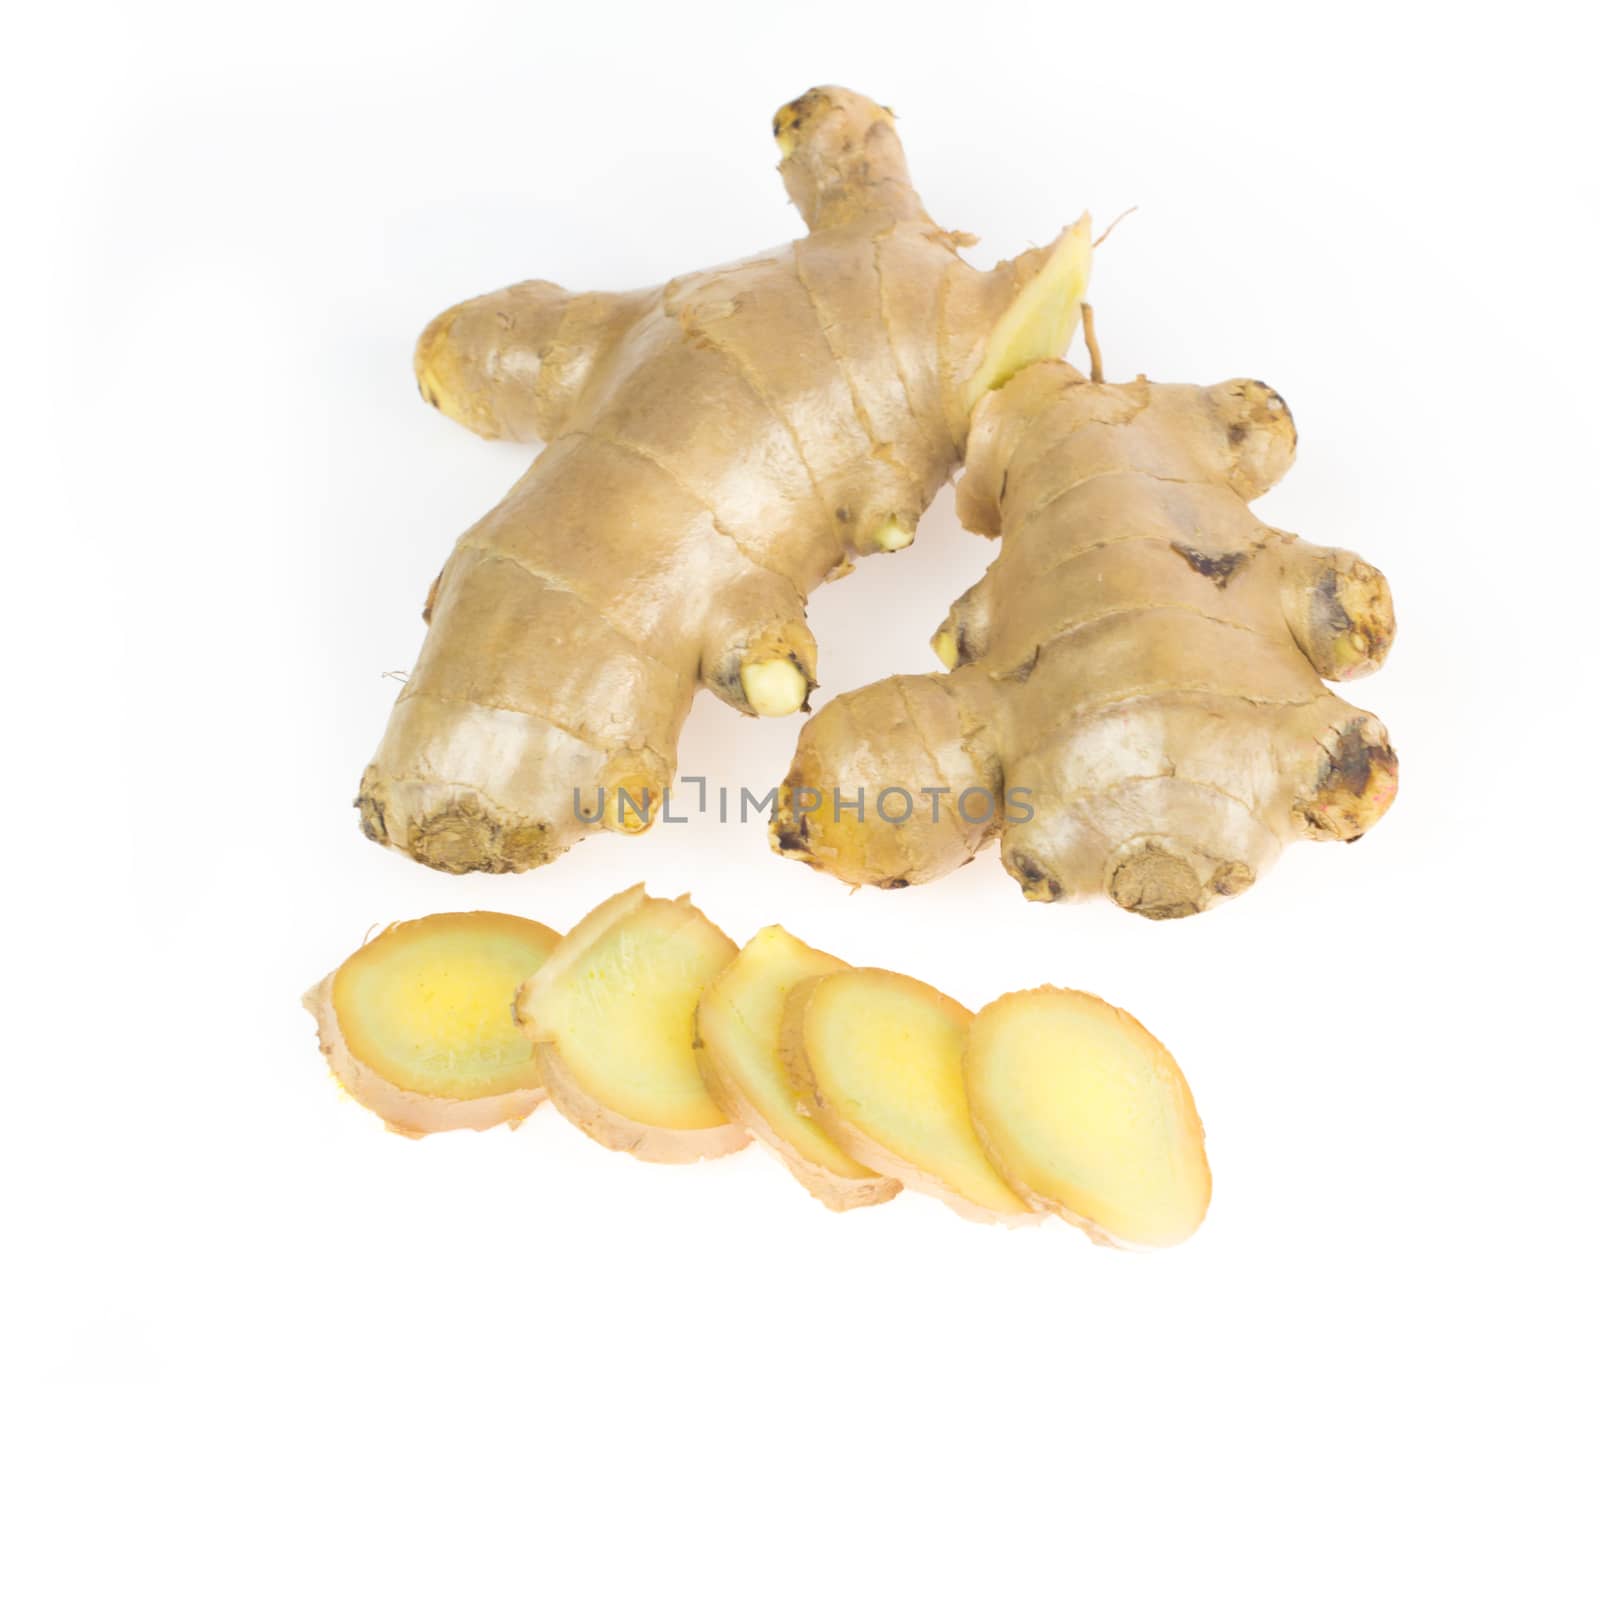 Fresh ginger root by wyoosumran